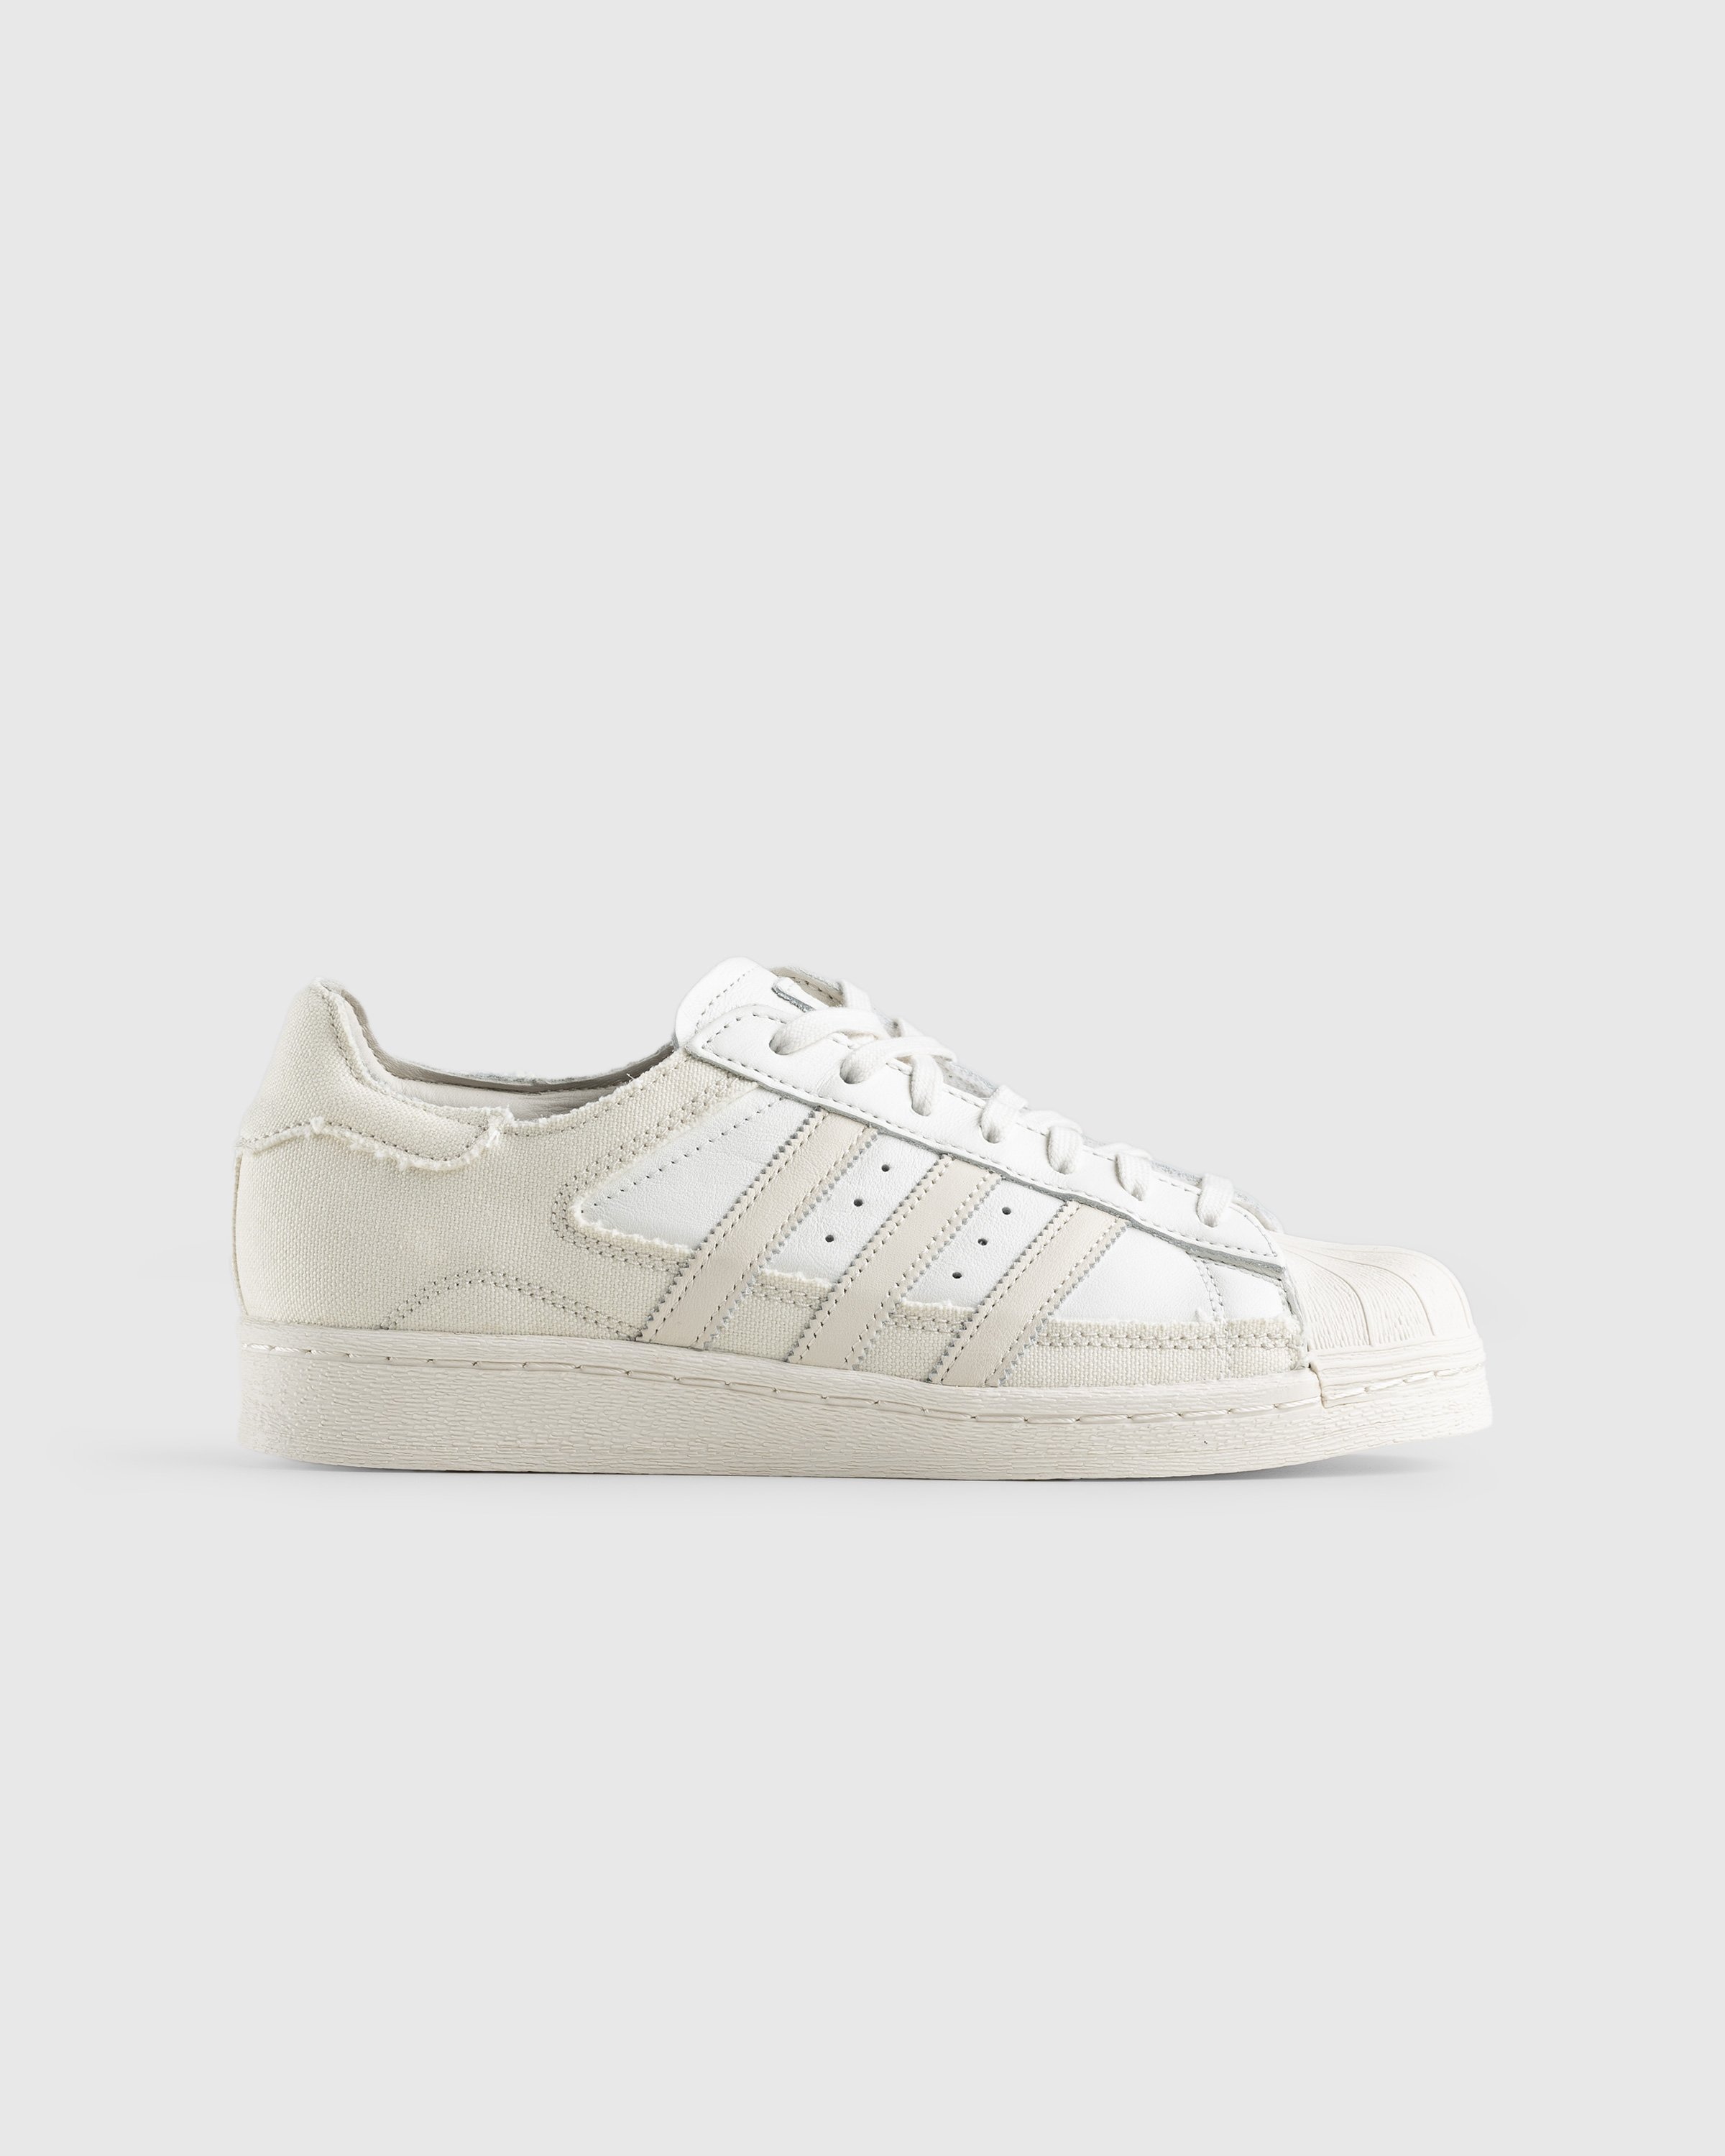 Adidas - Superstar 82 White/Beige - Footwear - Beige - Image 1